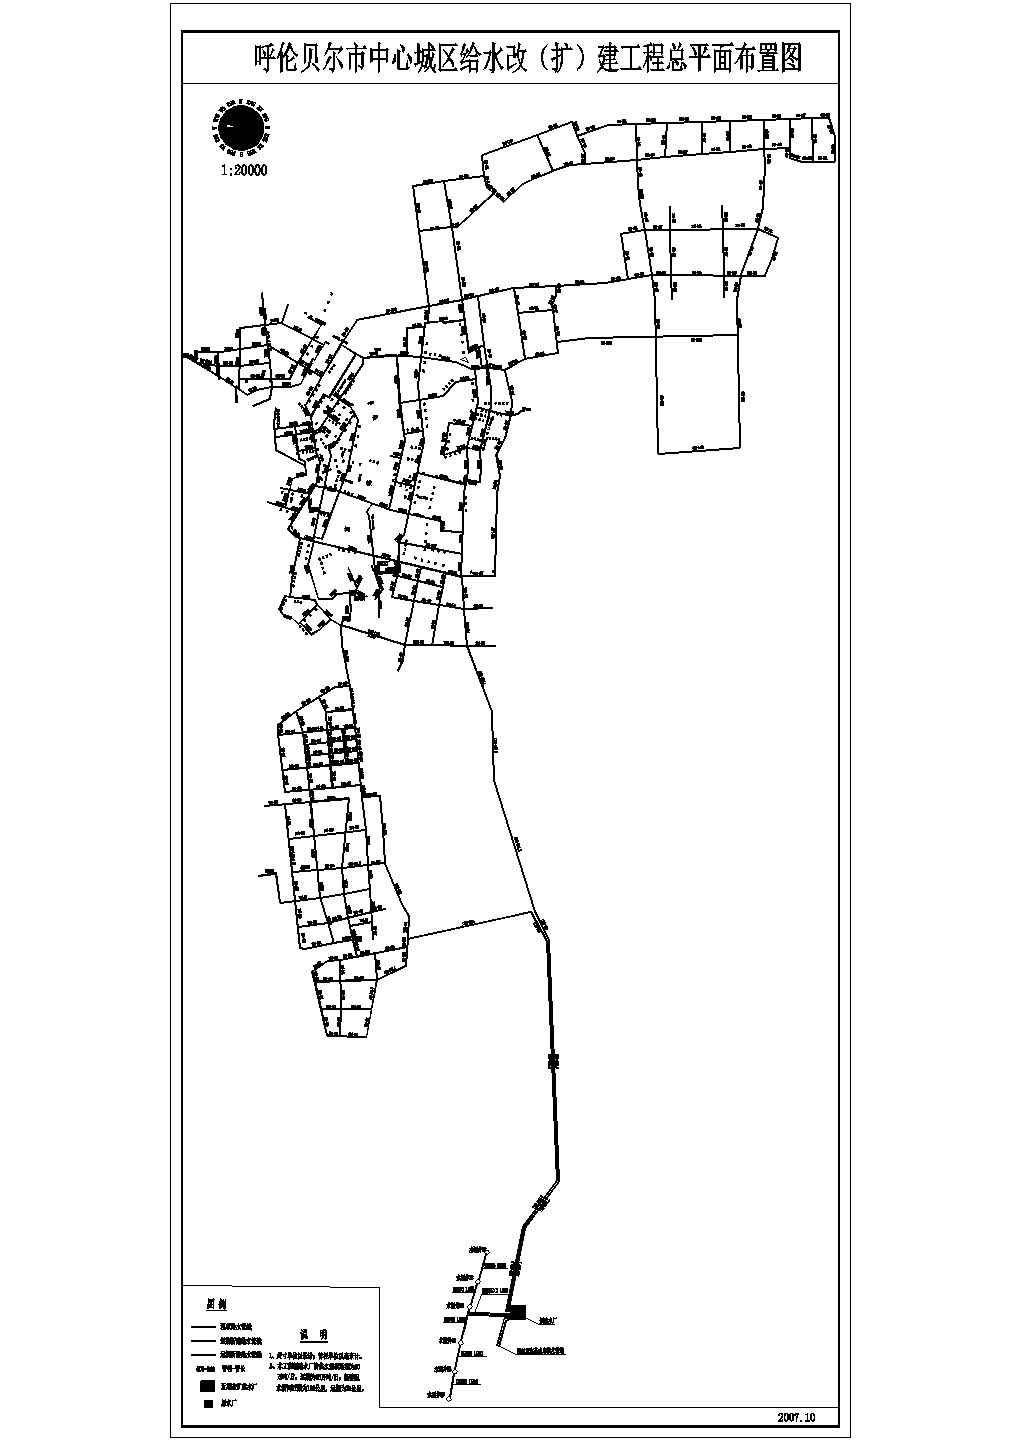 【呼伦贝尔市】城区给水管道改造设计cad图纸